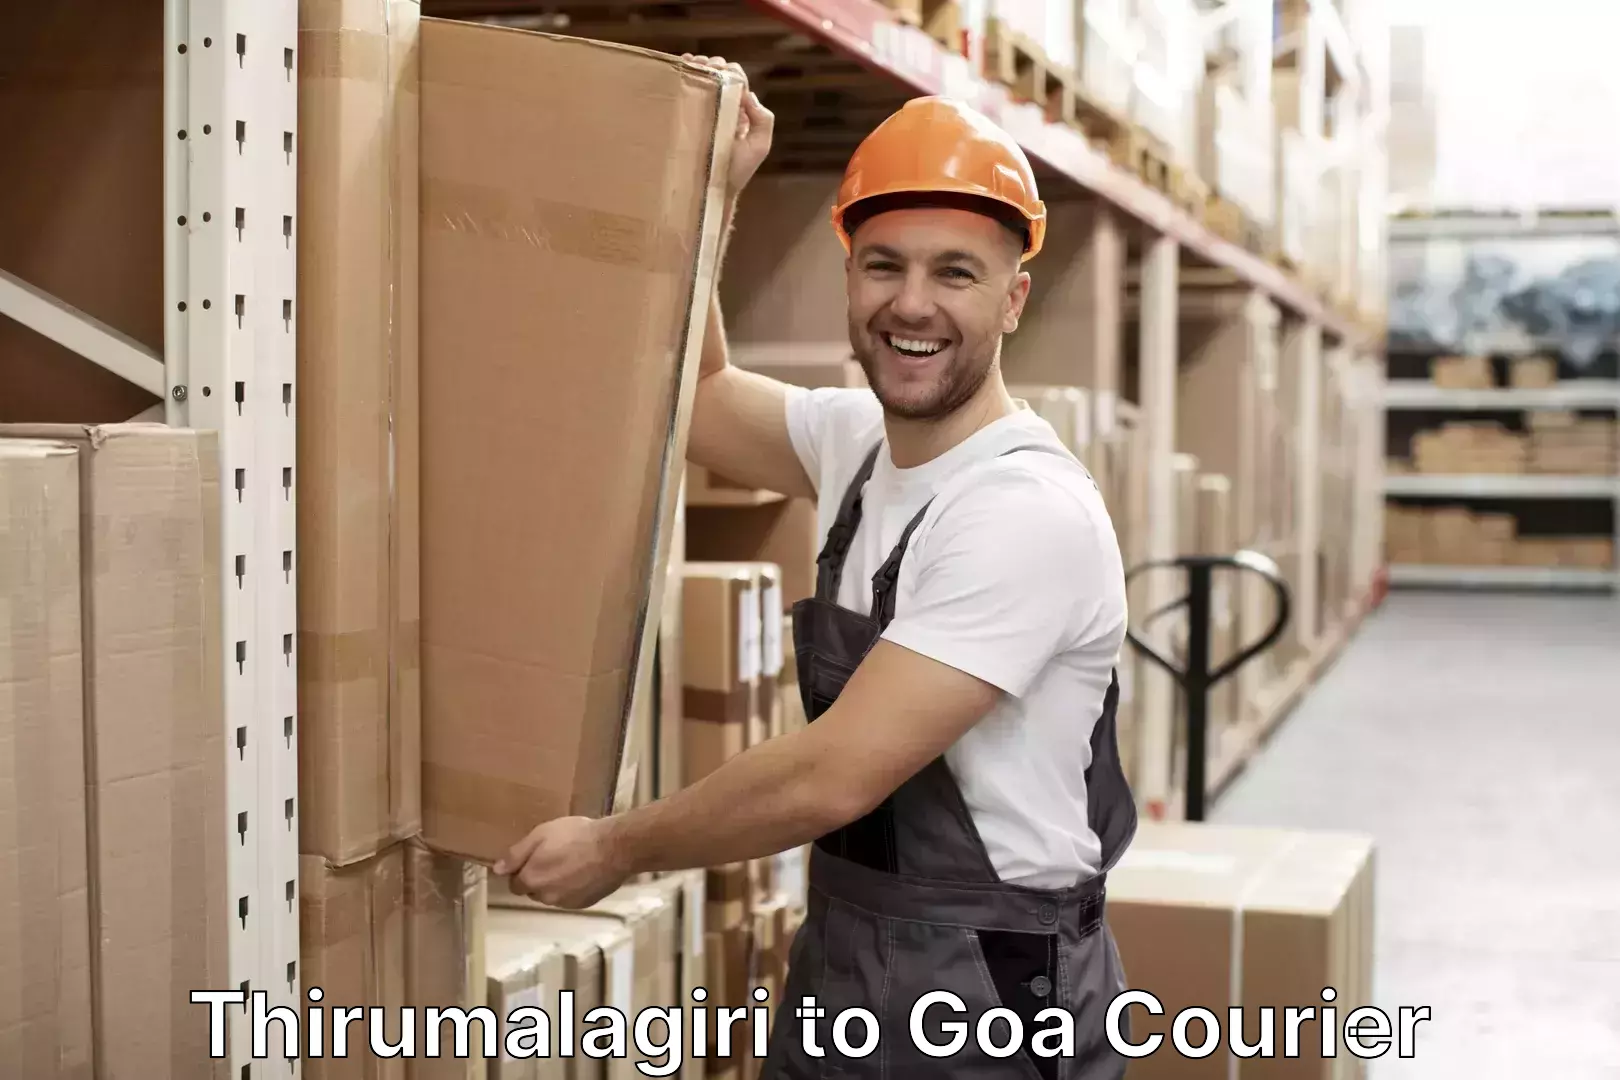 Luggage transport consultancy Thirumalagiri to Goa